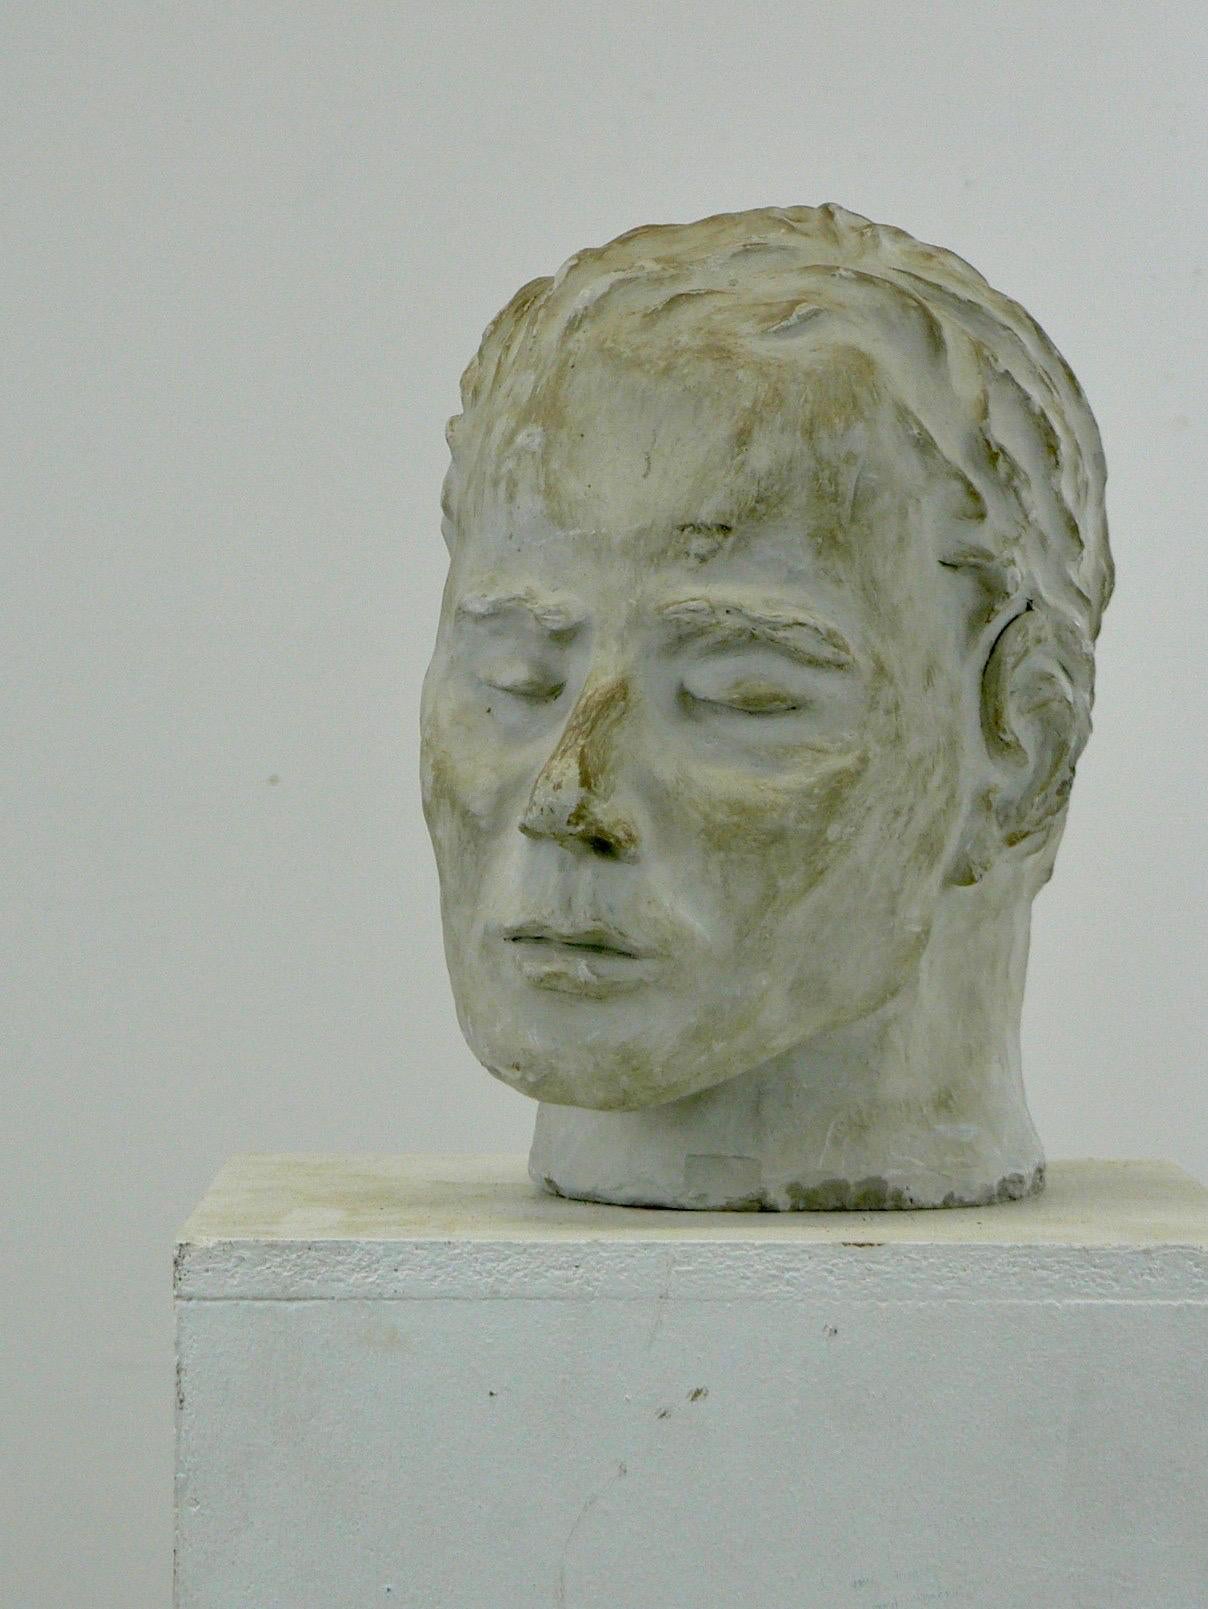 Sculpture en plâtre raffinée représentant une tête d'homme aux yeux fermés, réalisée en France dans les années 1950. Il présente une magnifique patine, ce qui ajoute à son allure et à sa sophistication.

Cette sculpture provient de l'atelier d'un